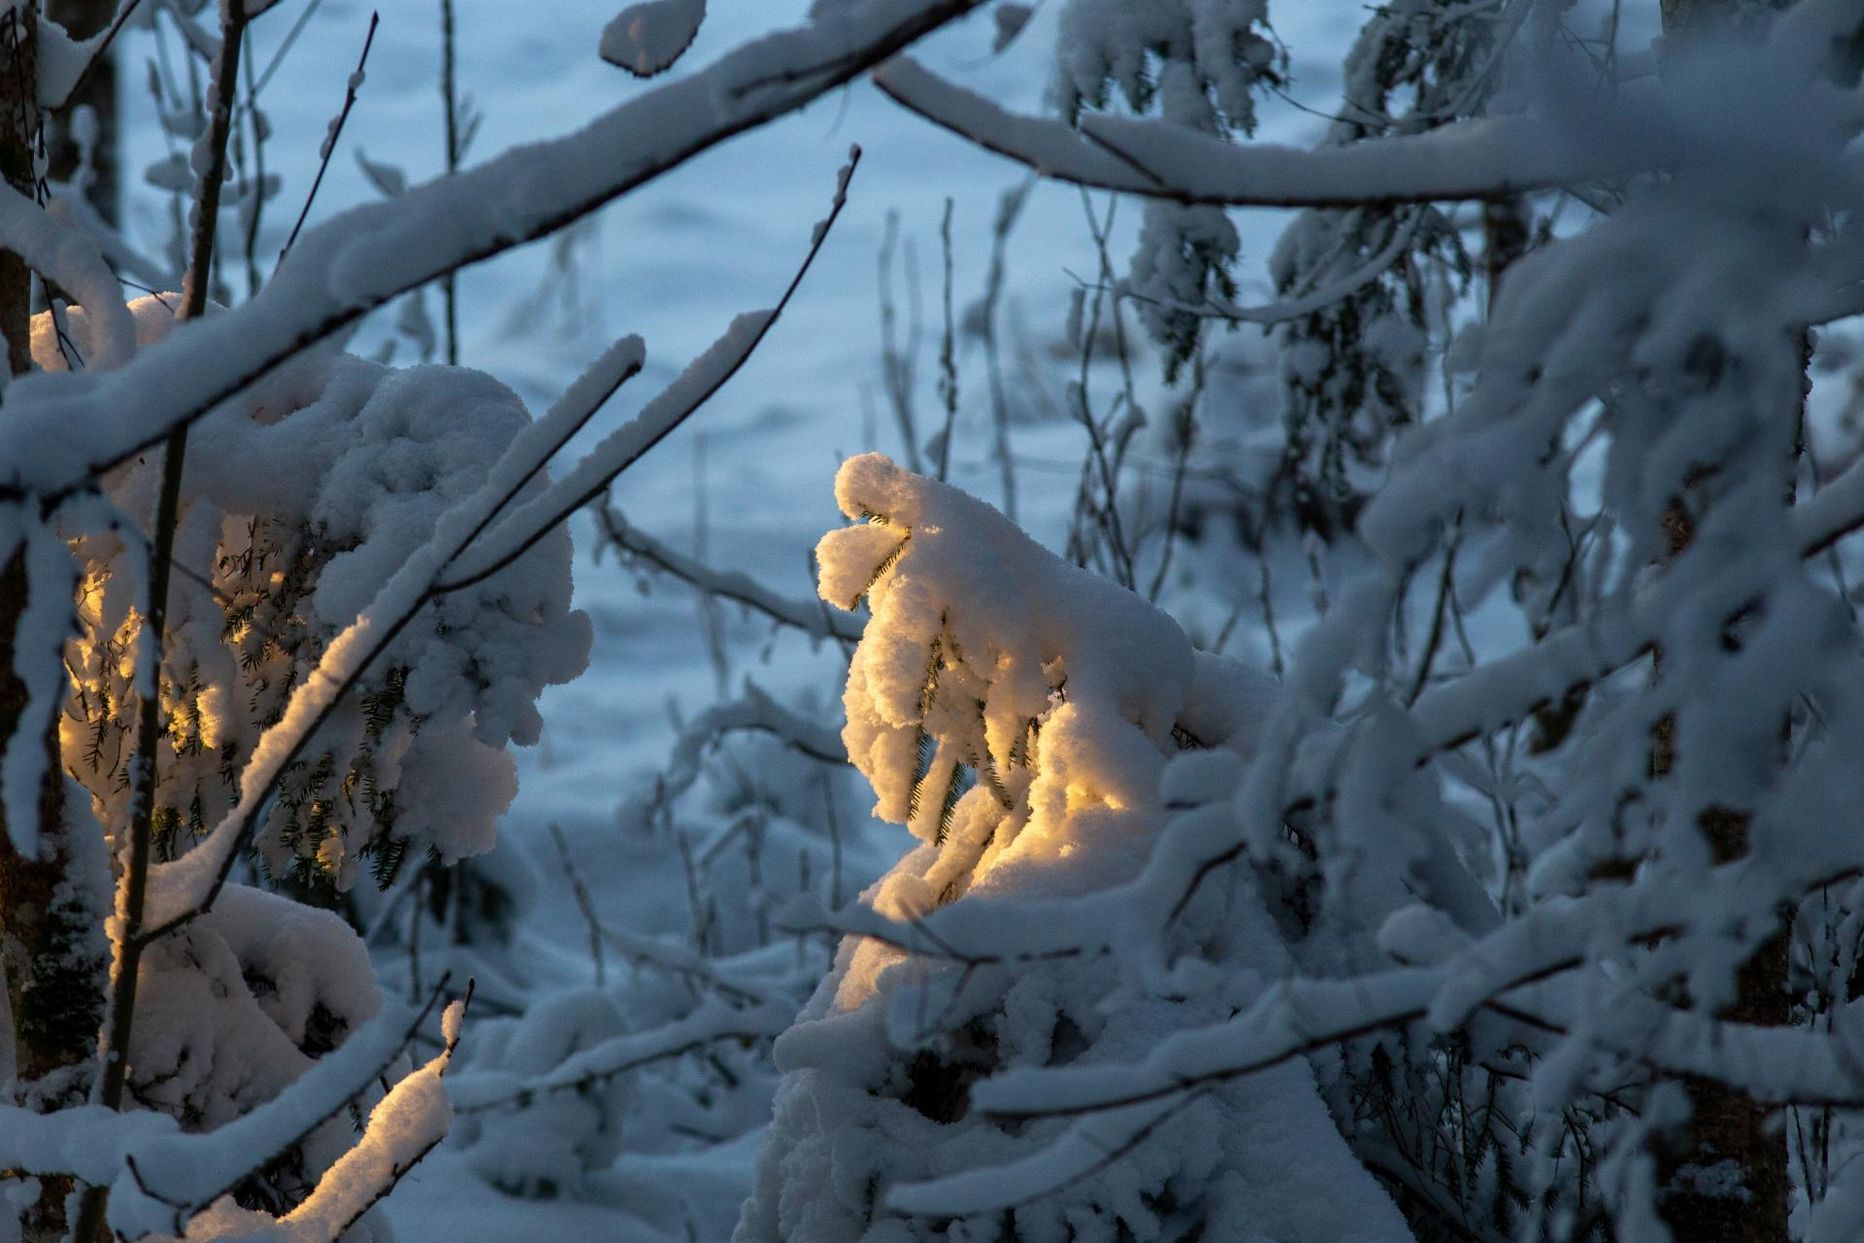 Talve esimene pool on olnud nii kaunilt lumine kui kurvalt vesine. See pilt on tehtud Viljandimaal 26. detsembril.